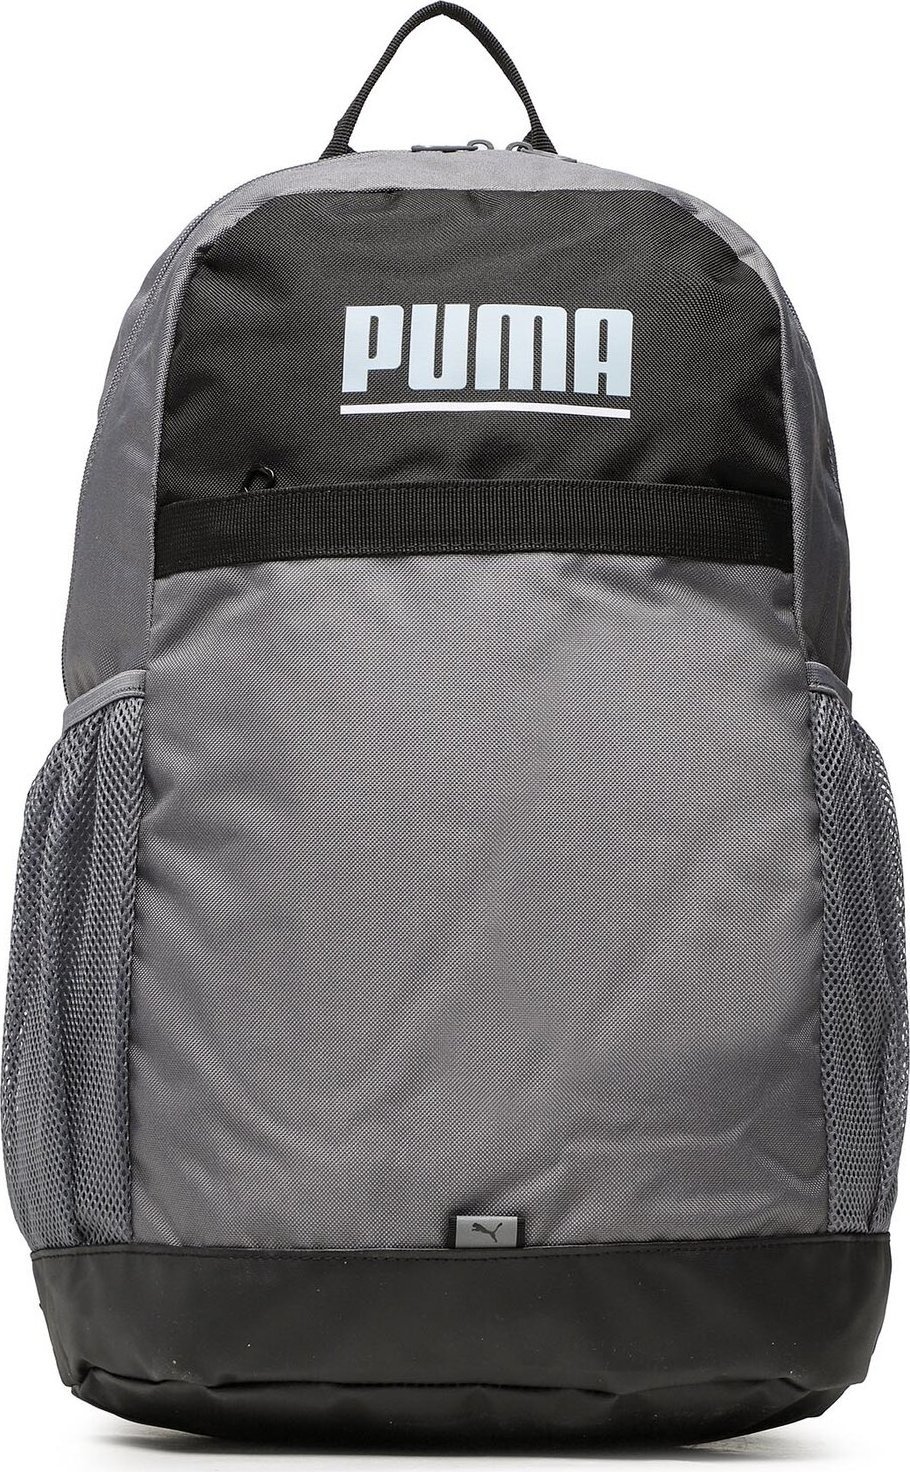 Batoh Puma Plus Backpack 079615 02 Cool Dark Grey